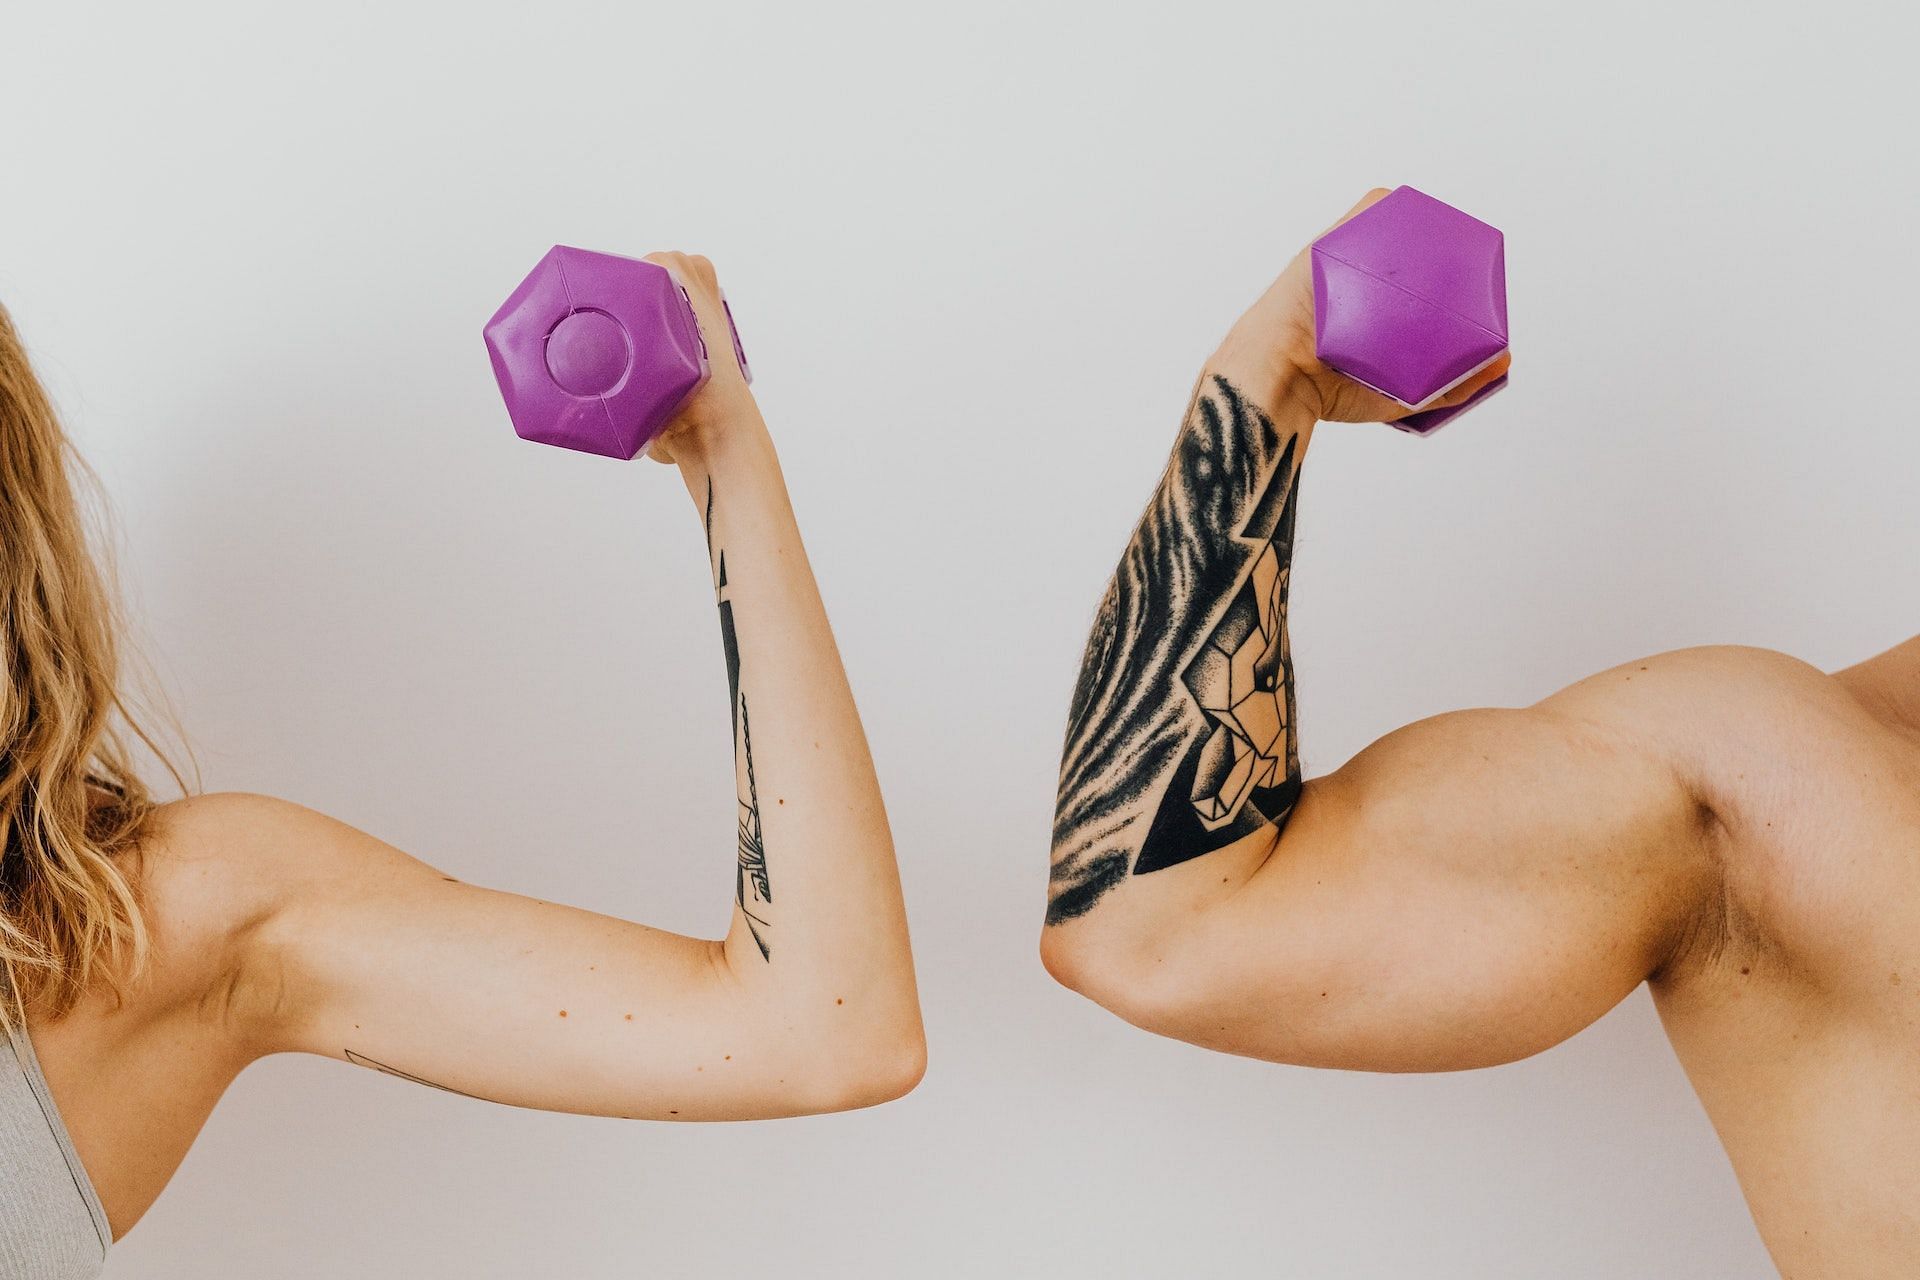 Bicep exercises make your arms look stronger, bigger, and well-toned. (Photo via Pexels/Karolina Grabowska)